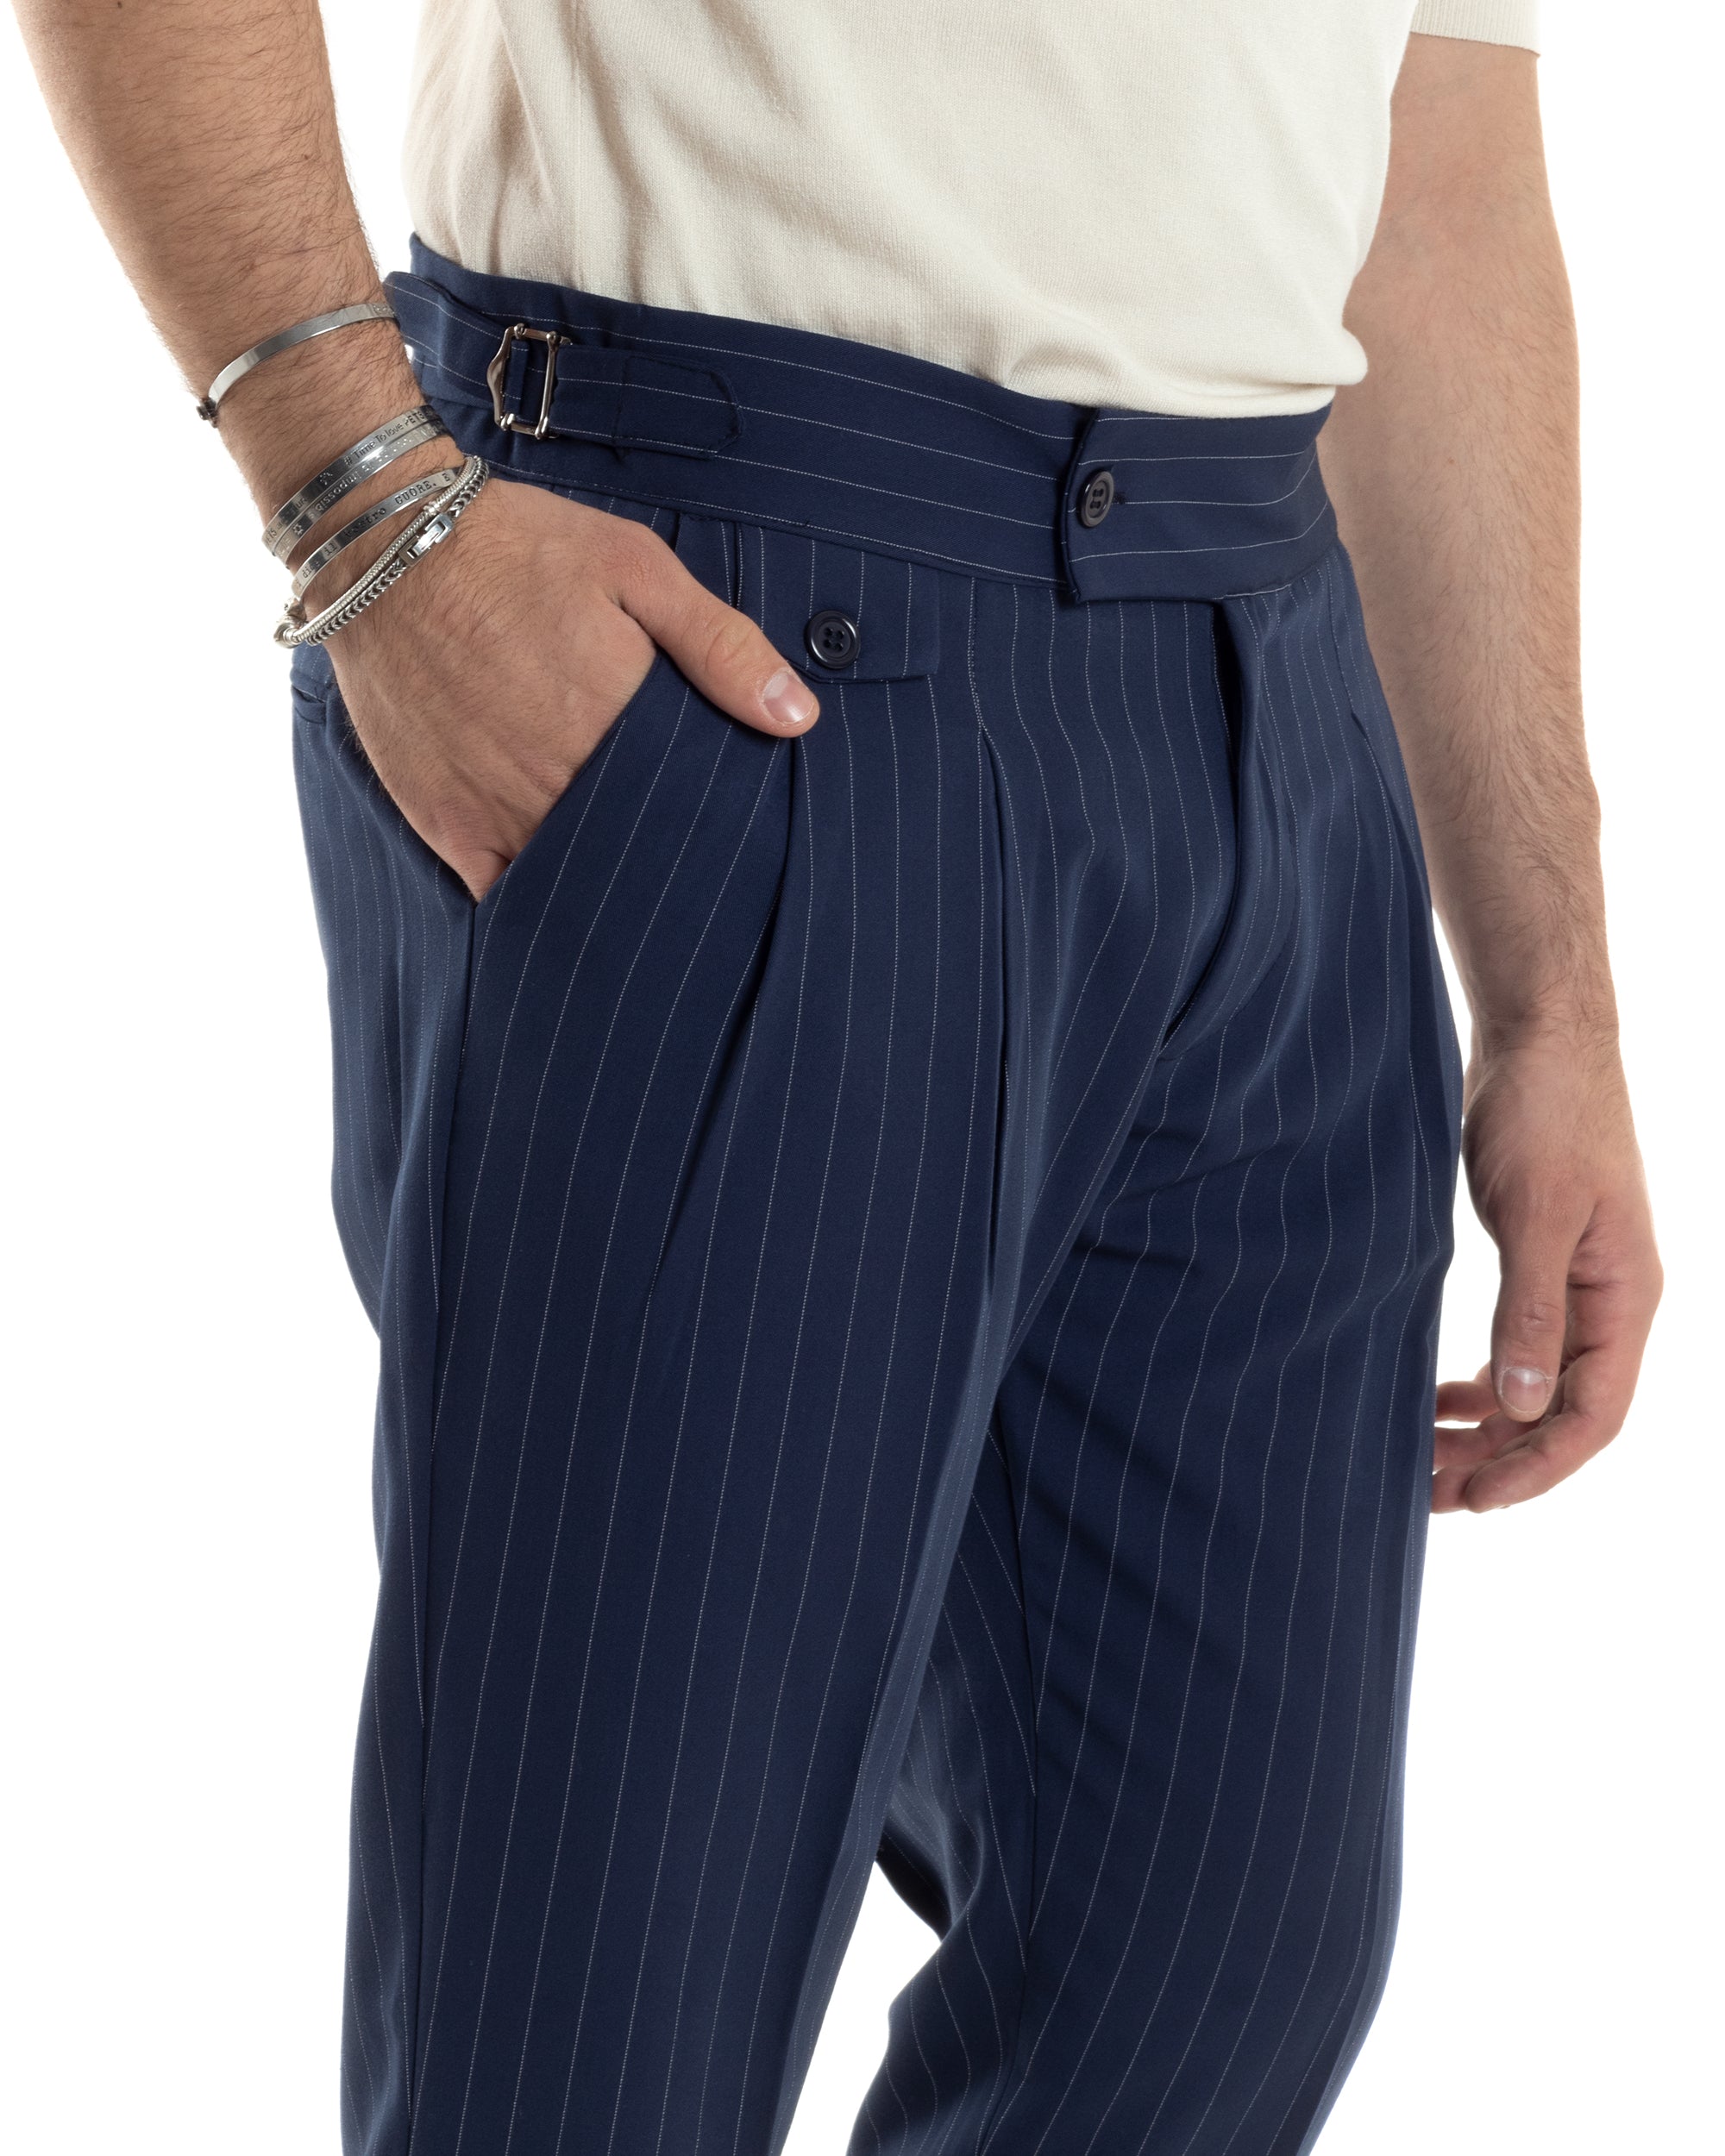 Pantaloni Uomo Classico Gessato Rigato Vita Alta Pinces Abbottonatura Allungata Fibbia Casual Blu GIOSAL-P6084A